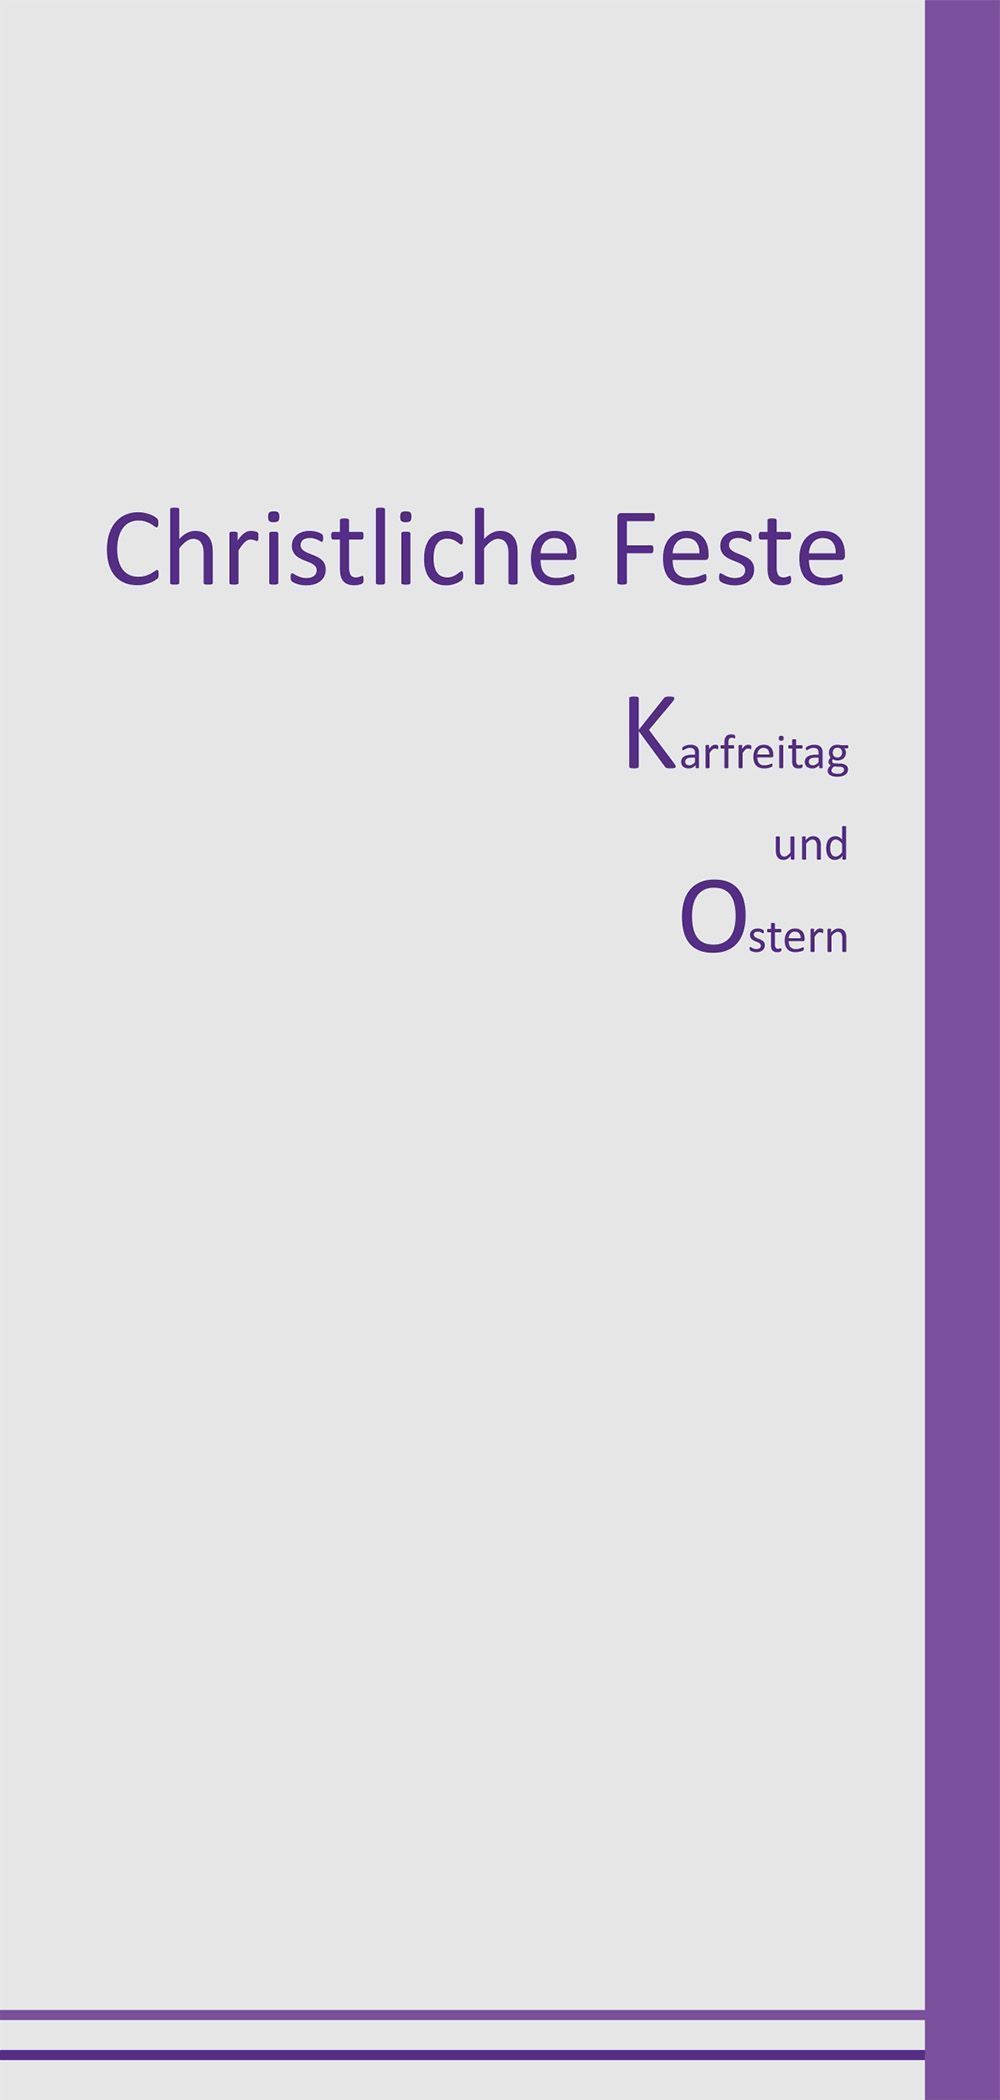 Christliche Feste - Karfreitag und Ostern - 10er Set